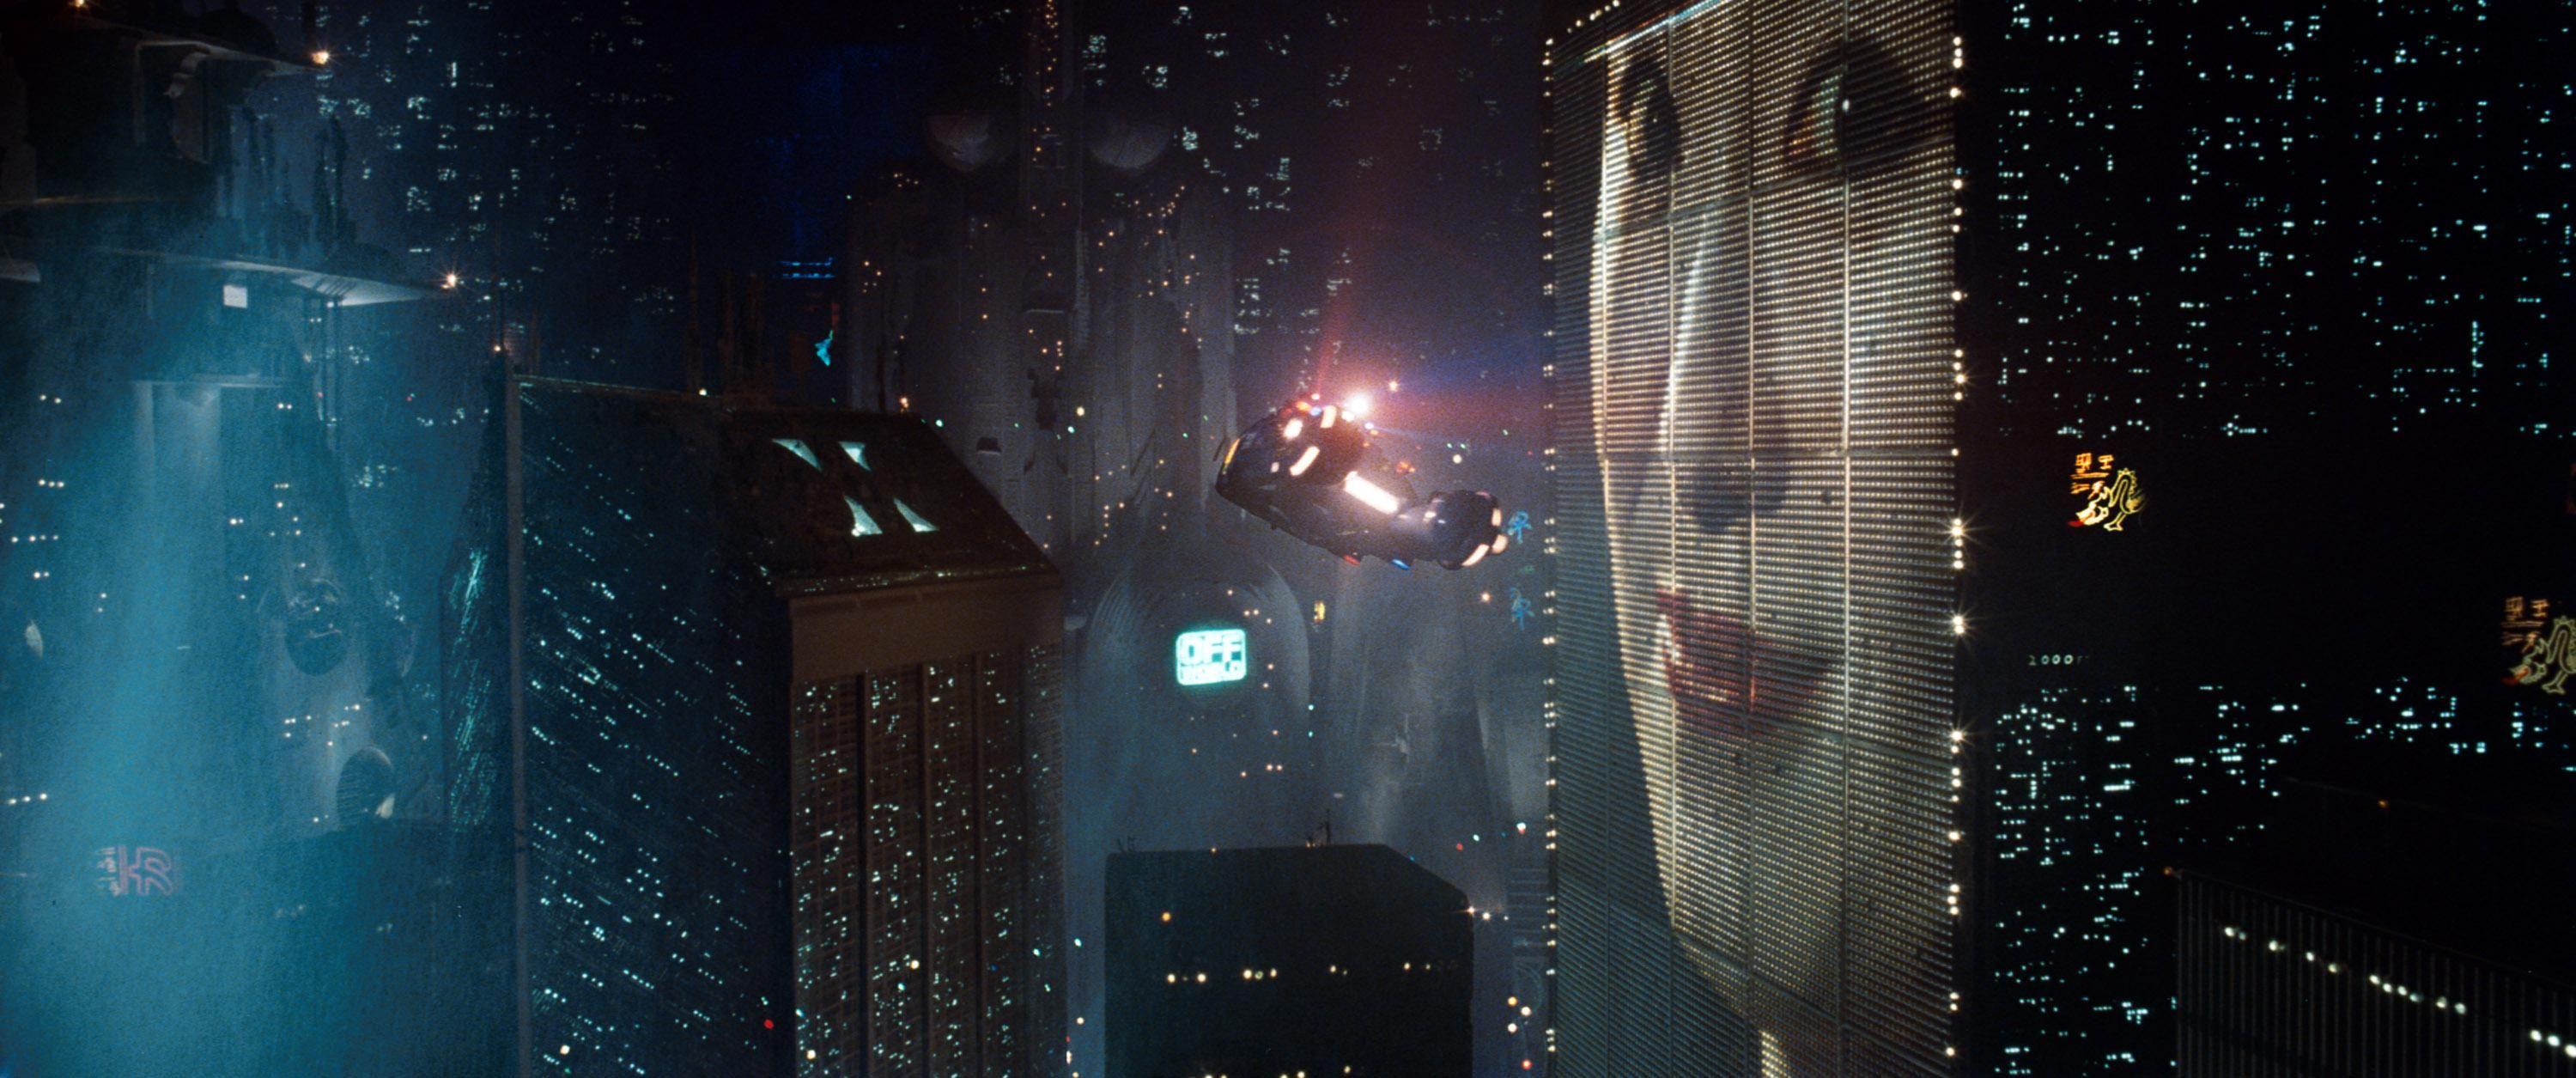 IPhone Blade Runner 2049   HD phone wallpaper  Pxfuel